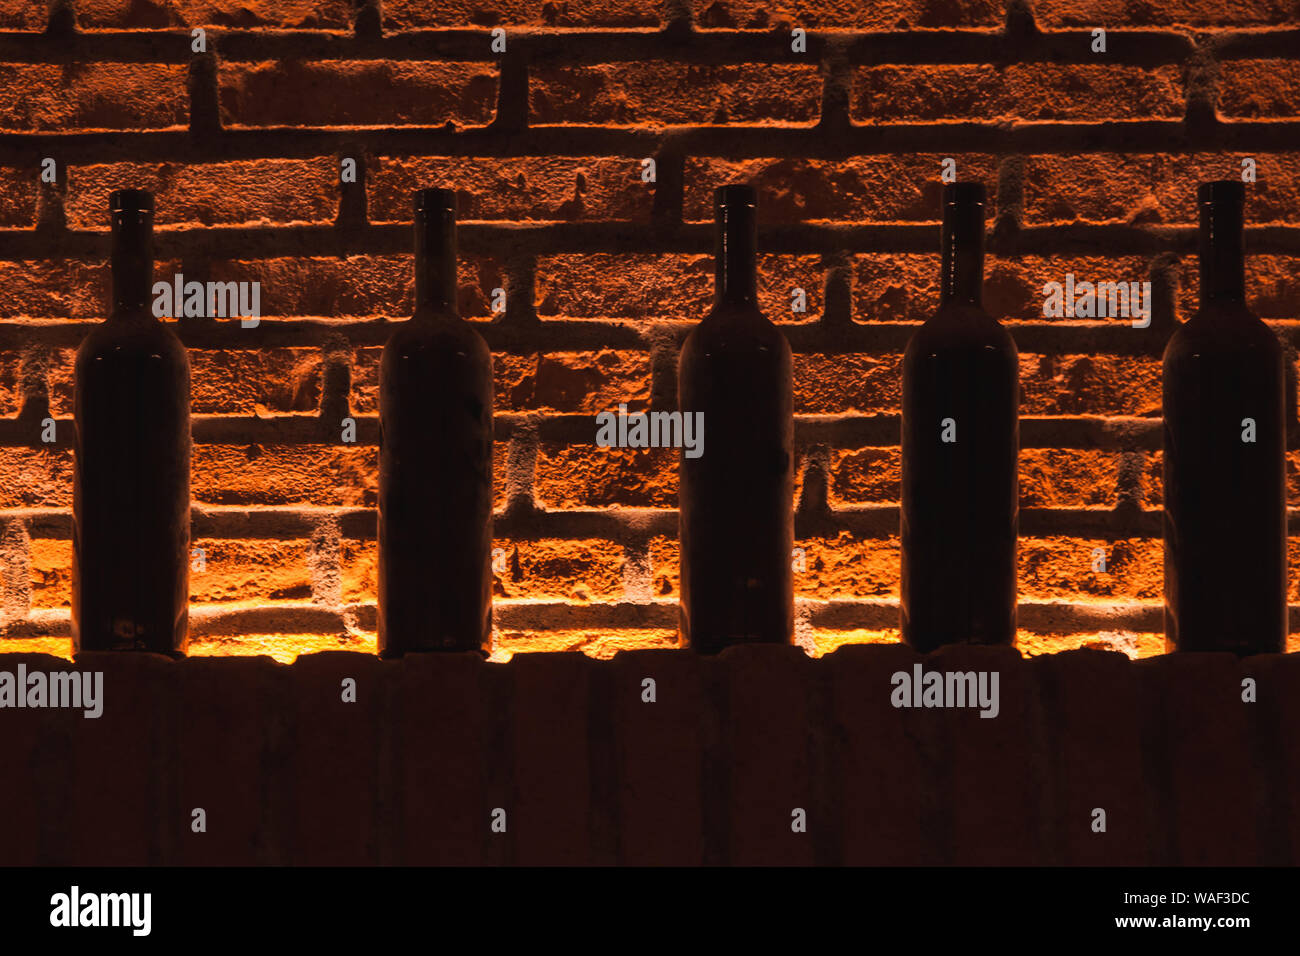 Staubige Flaschen Wein stehen in einer Reihe auf einem Regal in einem Weinkeller mit Red brick wall auf einem Hintergrund Stockfoto